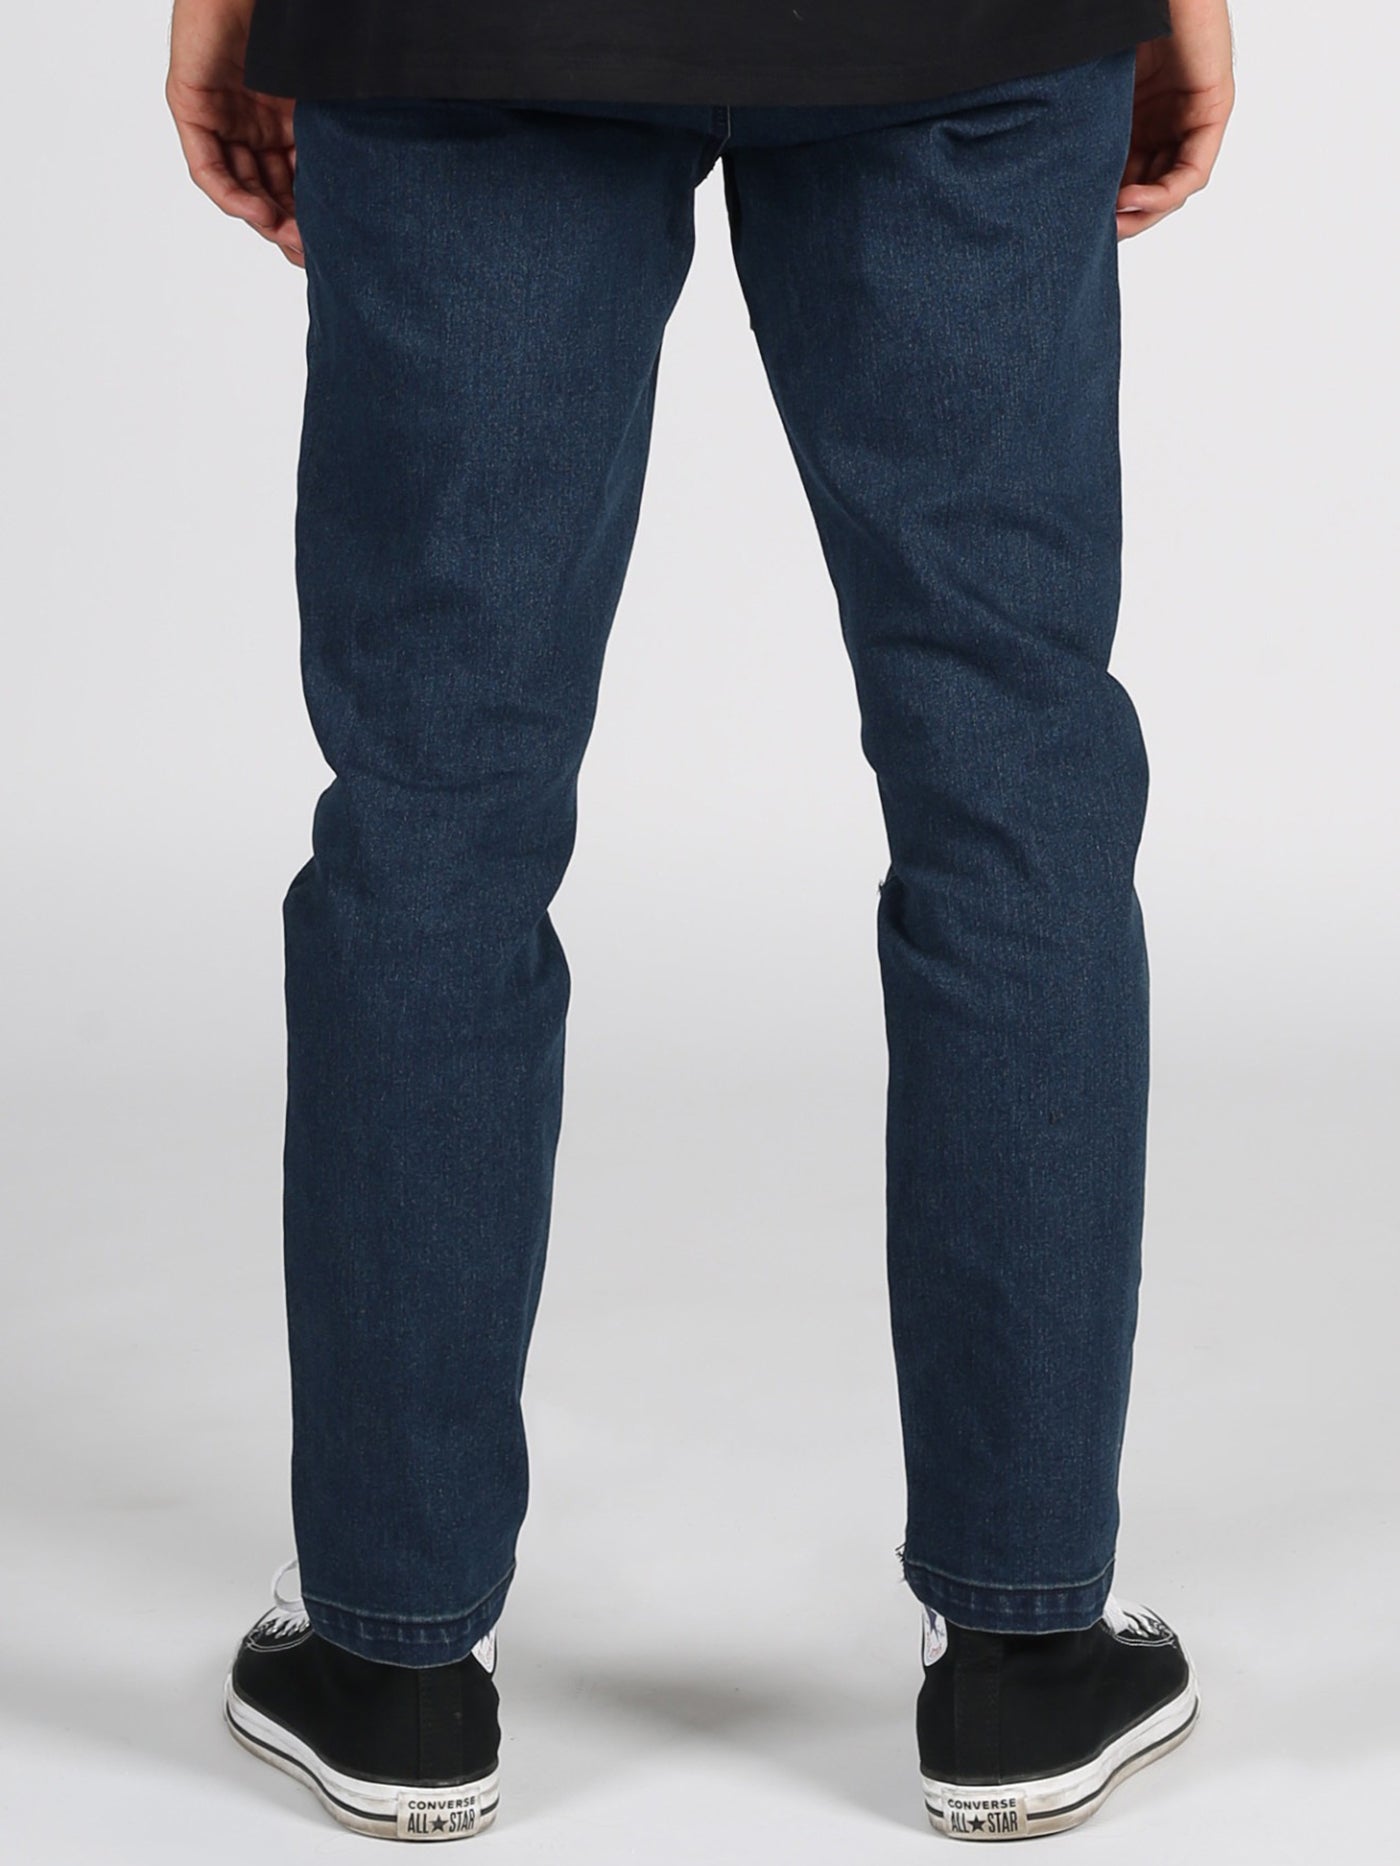 Lira San Clemente Jeans